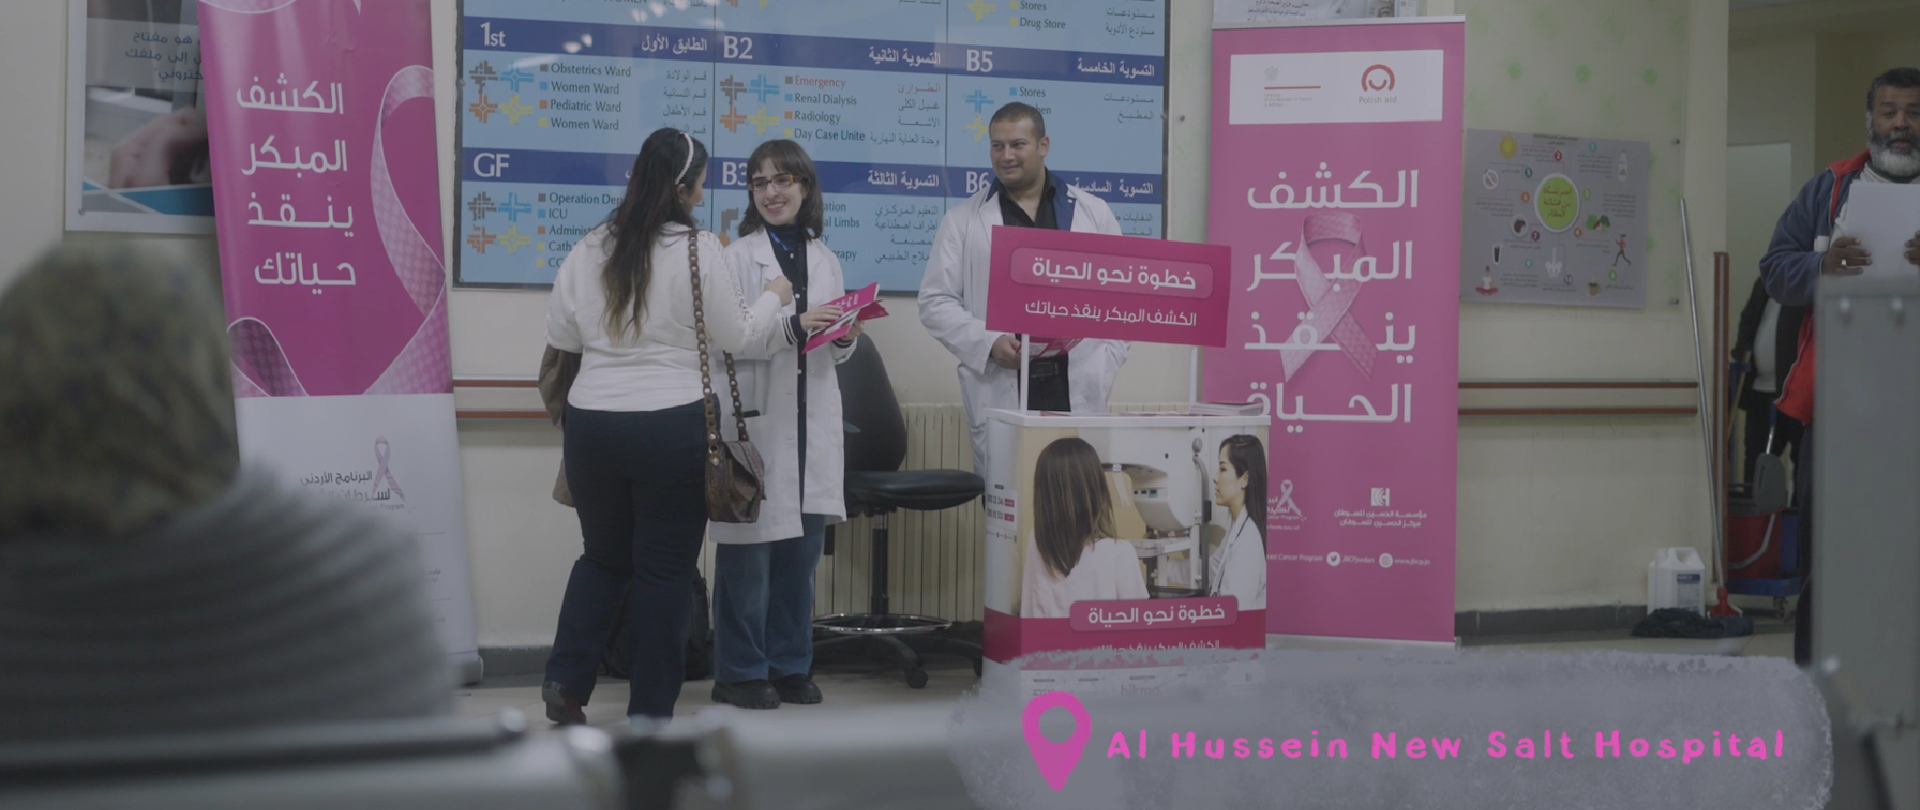 Stoisko informacyjne obsługiwane przez kobietę i mężczyznę w fartuchach medycznych. Kobieta trzyma różowe ulotki i rozmawia z jedną zainteresowaną.